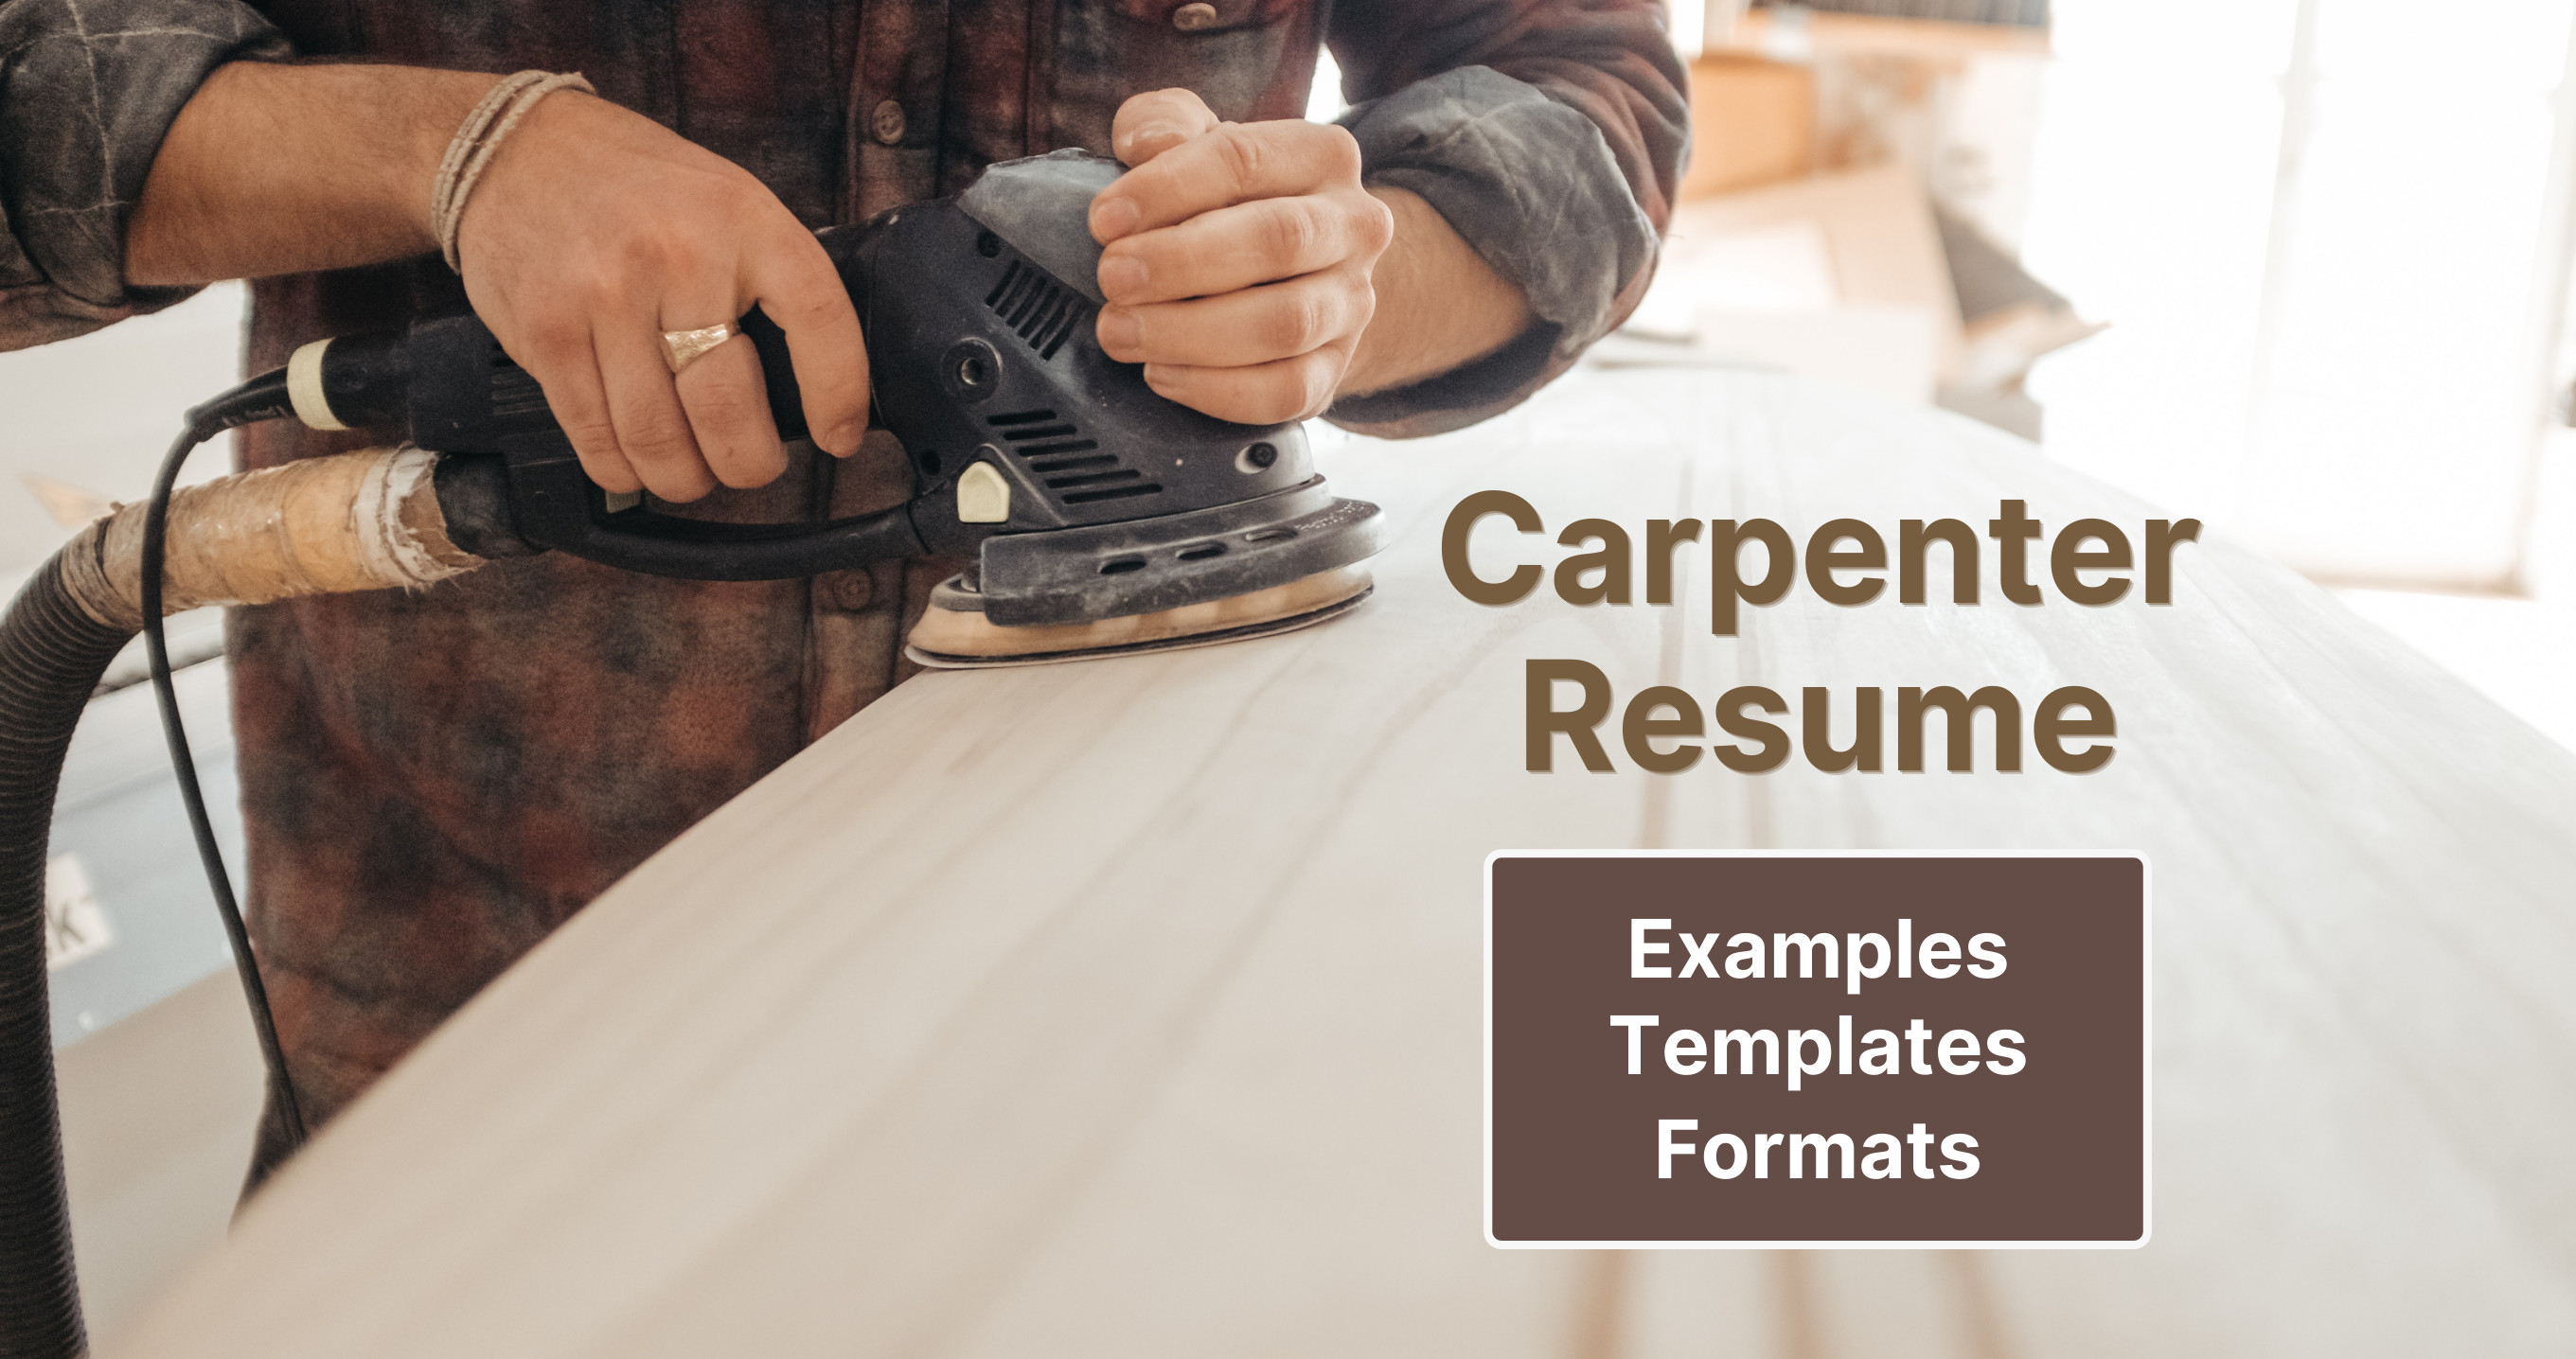 Carpenter Resume Examples Templates Essential Skills Cakeresume